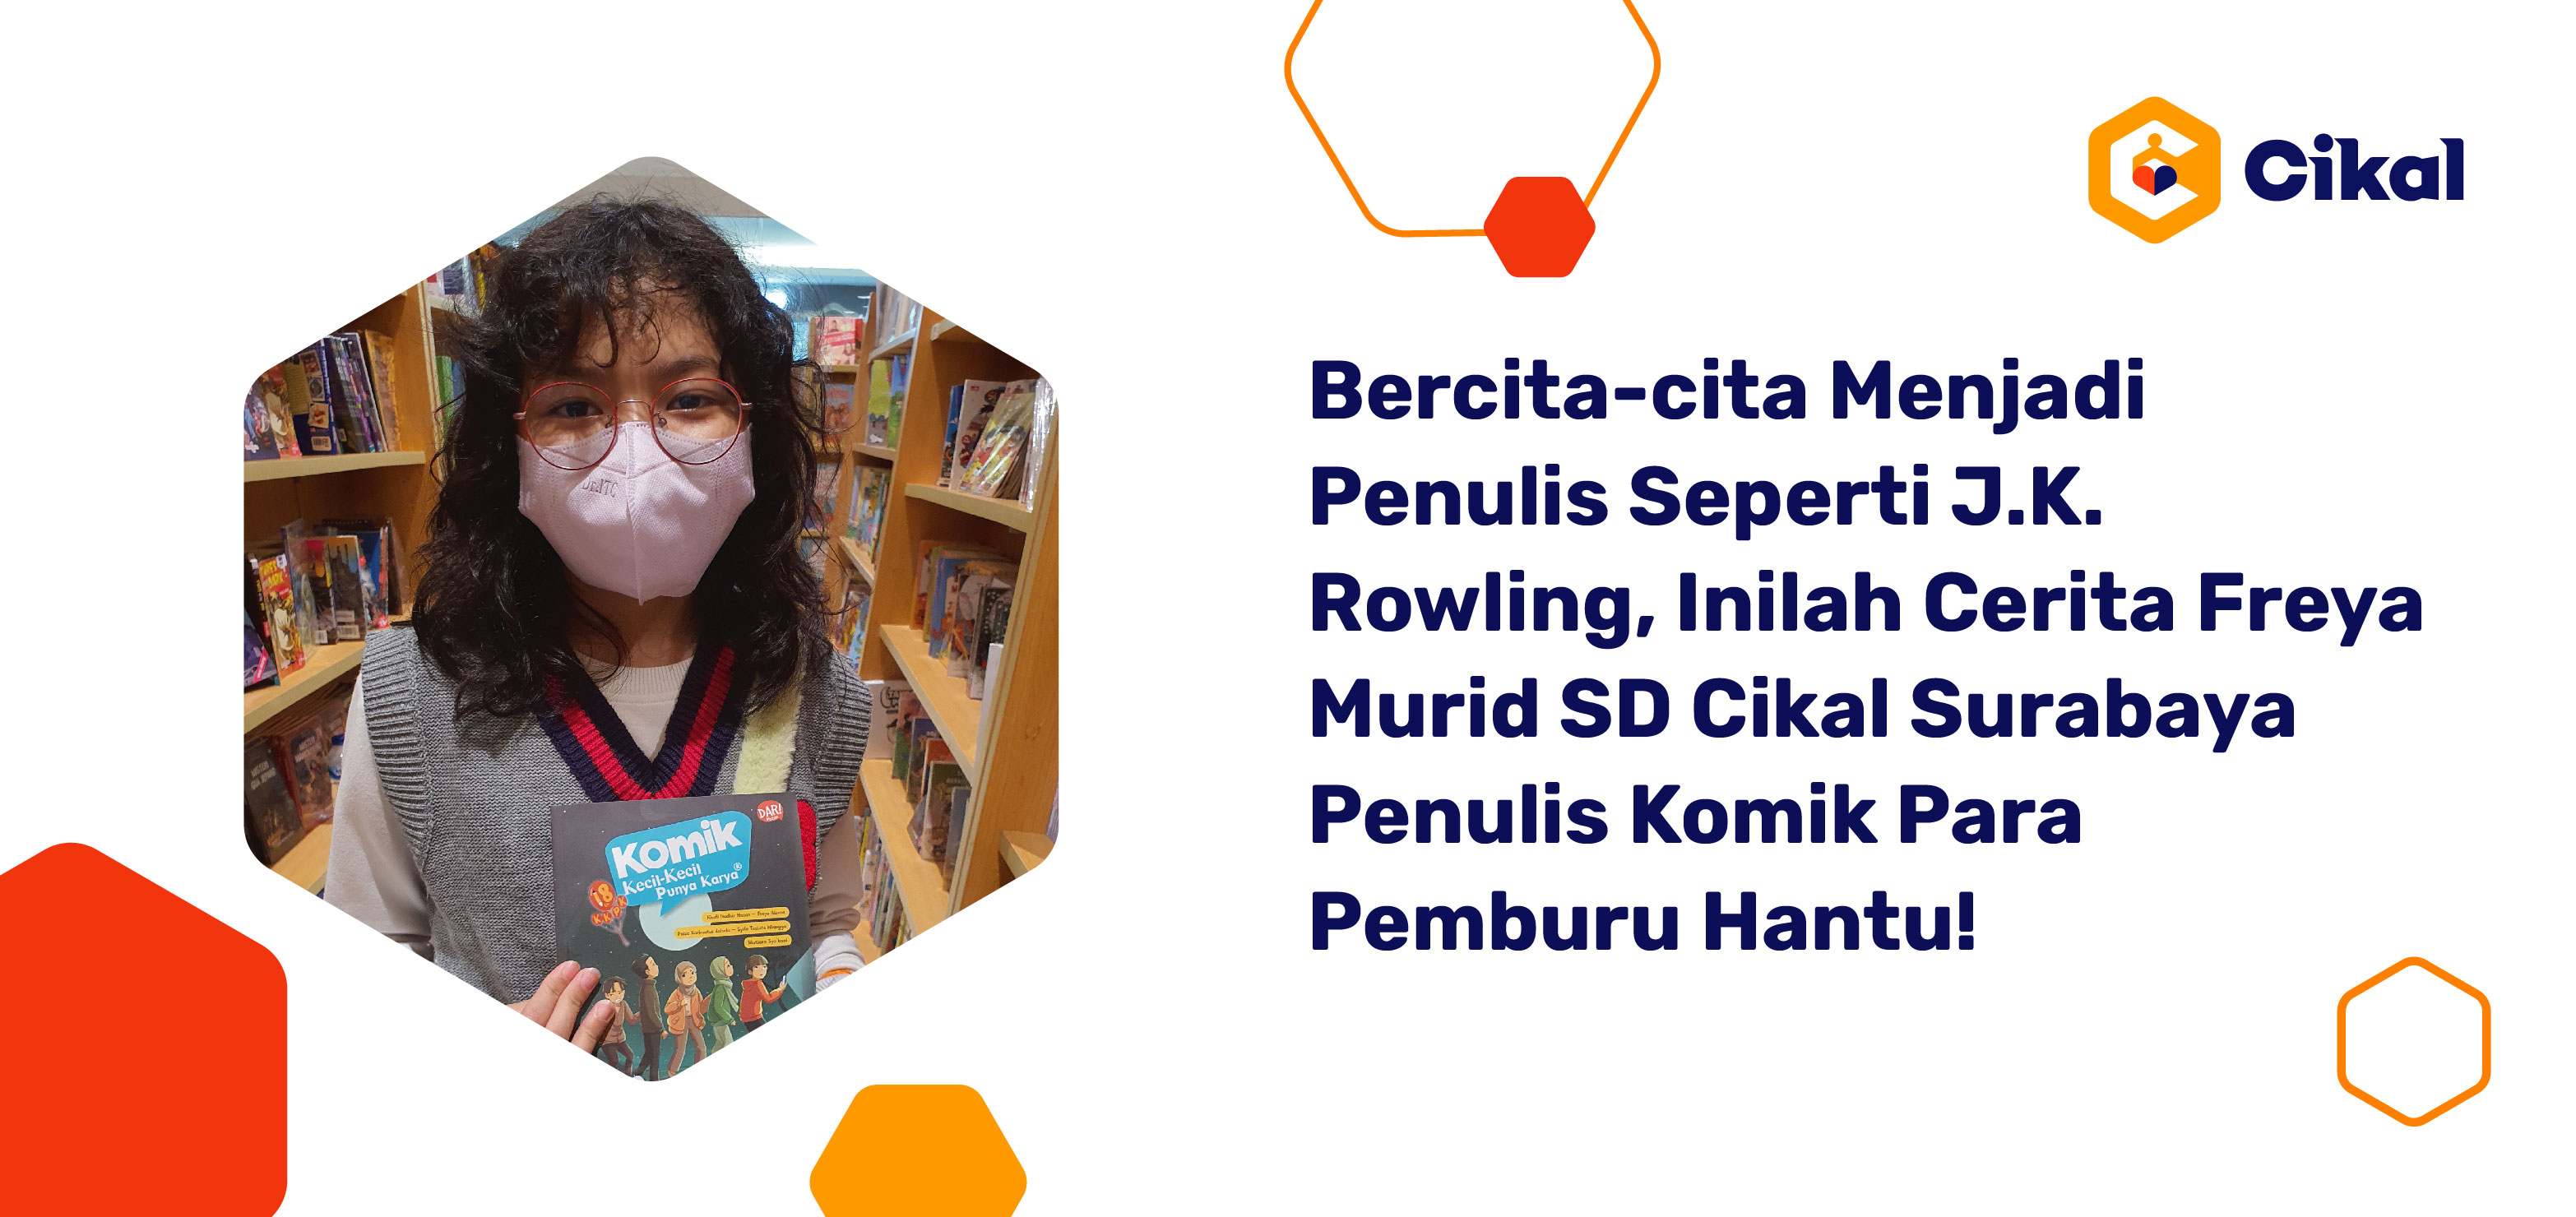 Bercita-cita Menjadi Penulis Seperti J.K. Rowling, Inilah Cerita Freya Murid SD Cikal Surabaya Penulis Komik Para Pemburu Hantu!